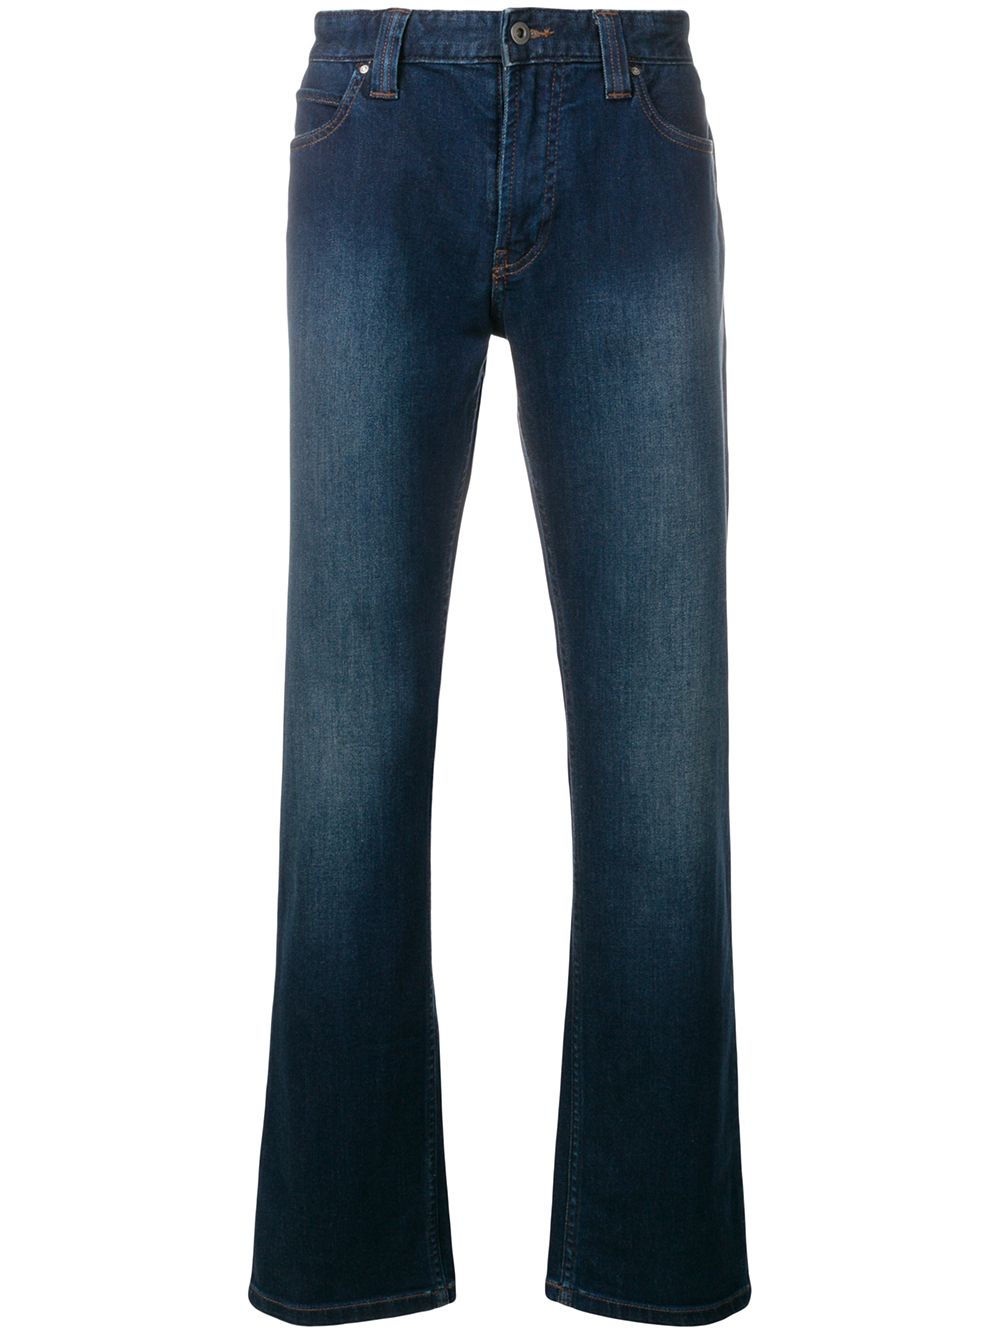 Emporio Armani джинсы с выцветшим эффектом от Emporio Armani